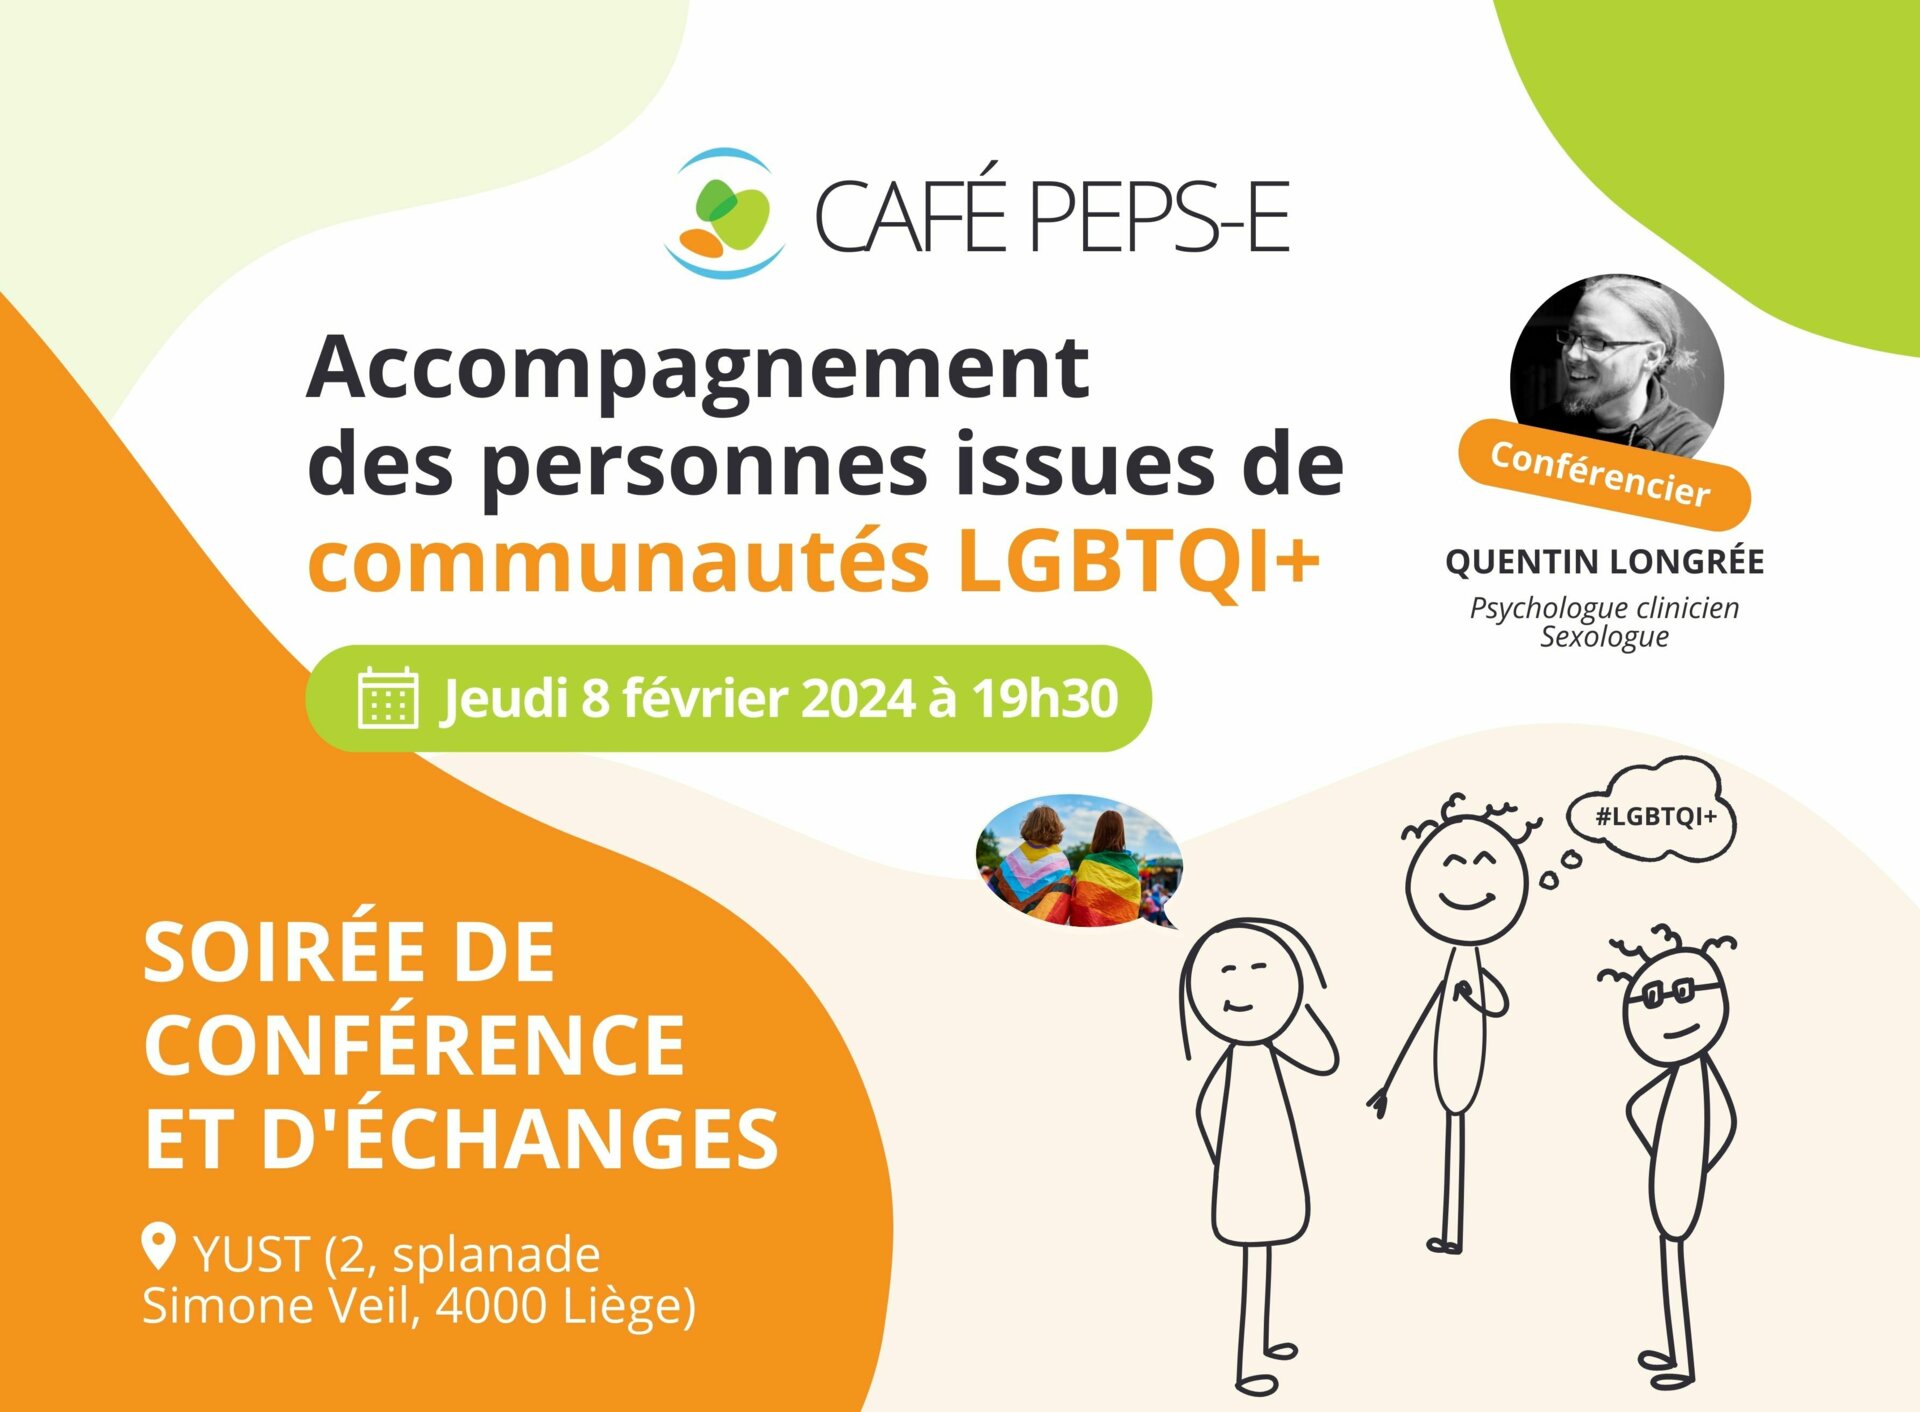 Café Peps-E : Soirée de conférence et d'échanges sur l'accompagnement des personnes issues de communautés LGBTQI+, le 8 février 2024 à Liège